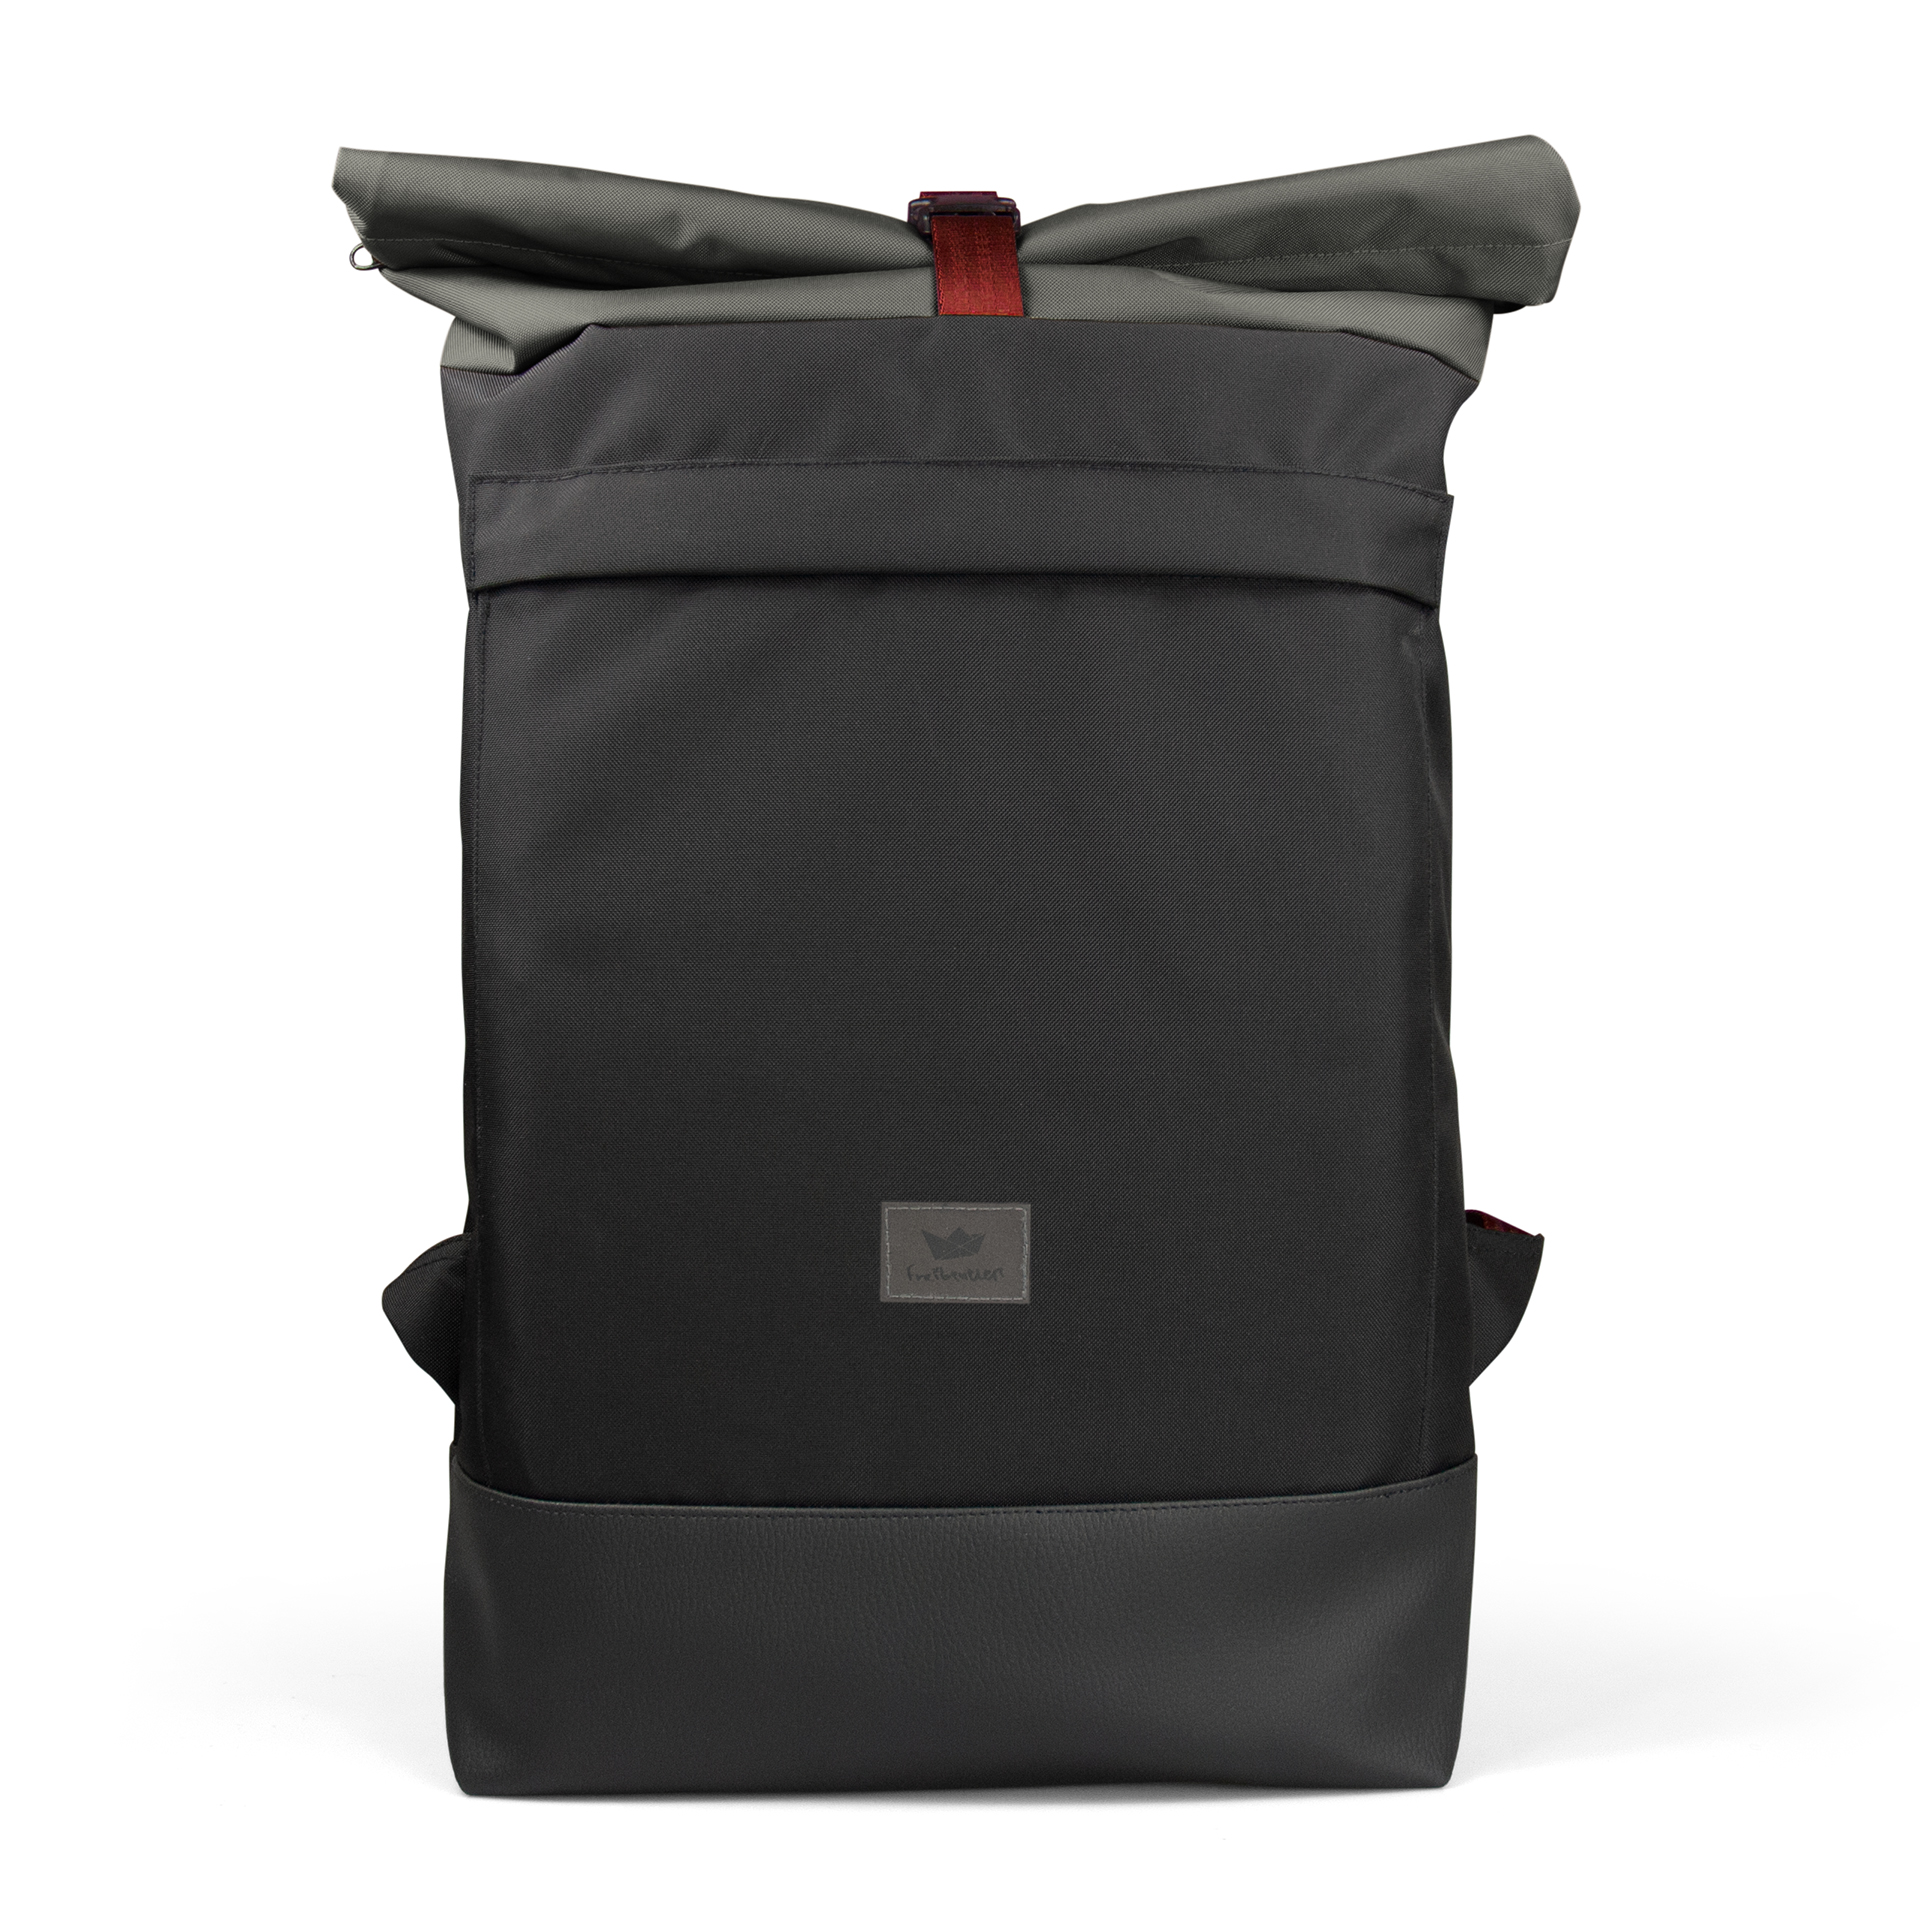 schwarzer Courierbag Rucksack mit rotem Kontrastband von Freibeutler - vegan und aus recyceltem PET hergestellt